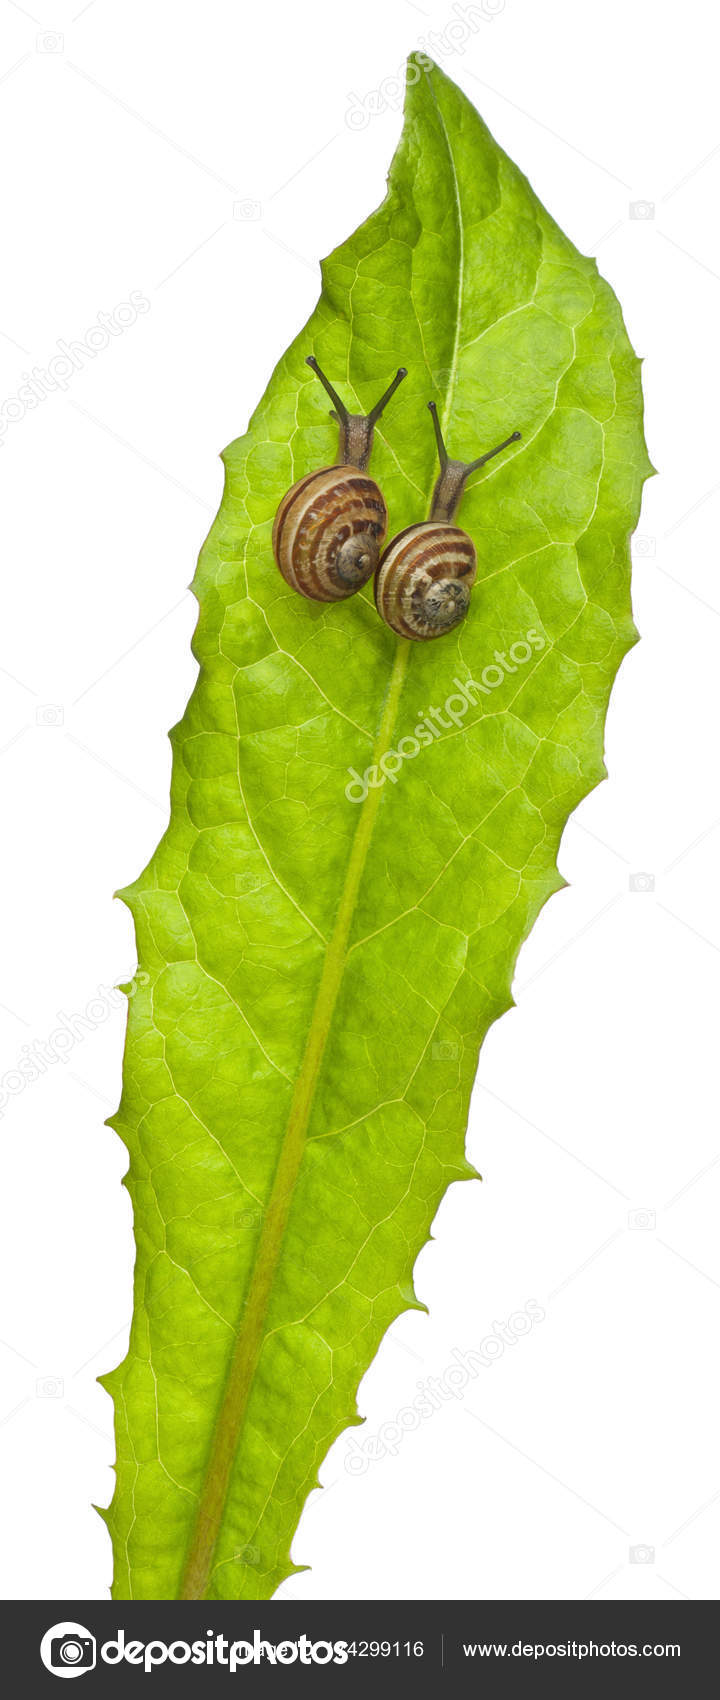 Two White Garden Snails Or Mediterranean Snail Theba Pisana In Front Of White Background Stock Photo C Lifeonwhite